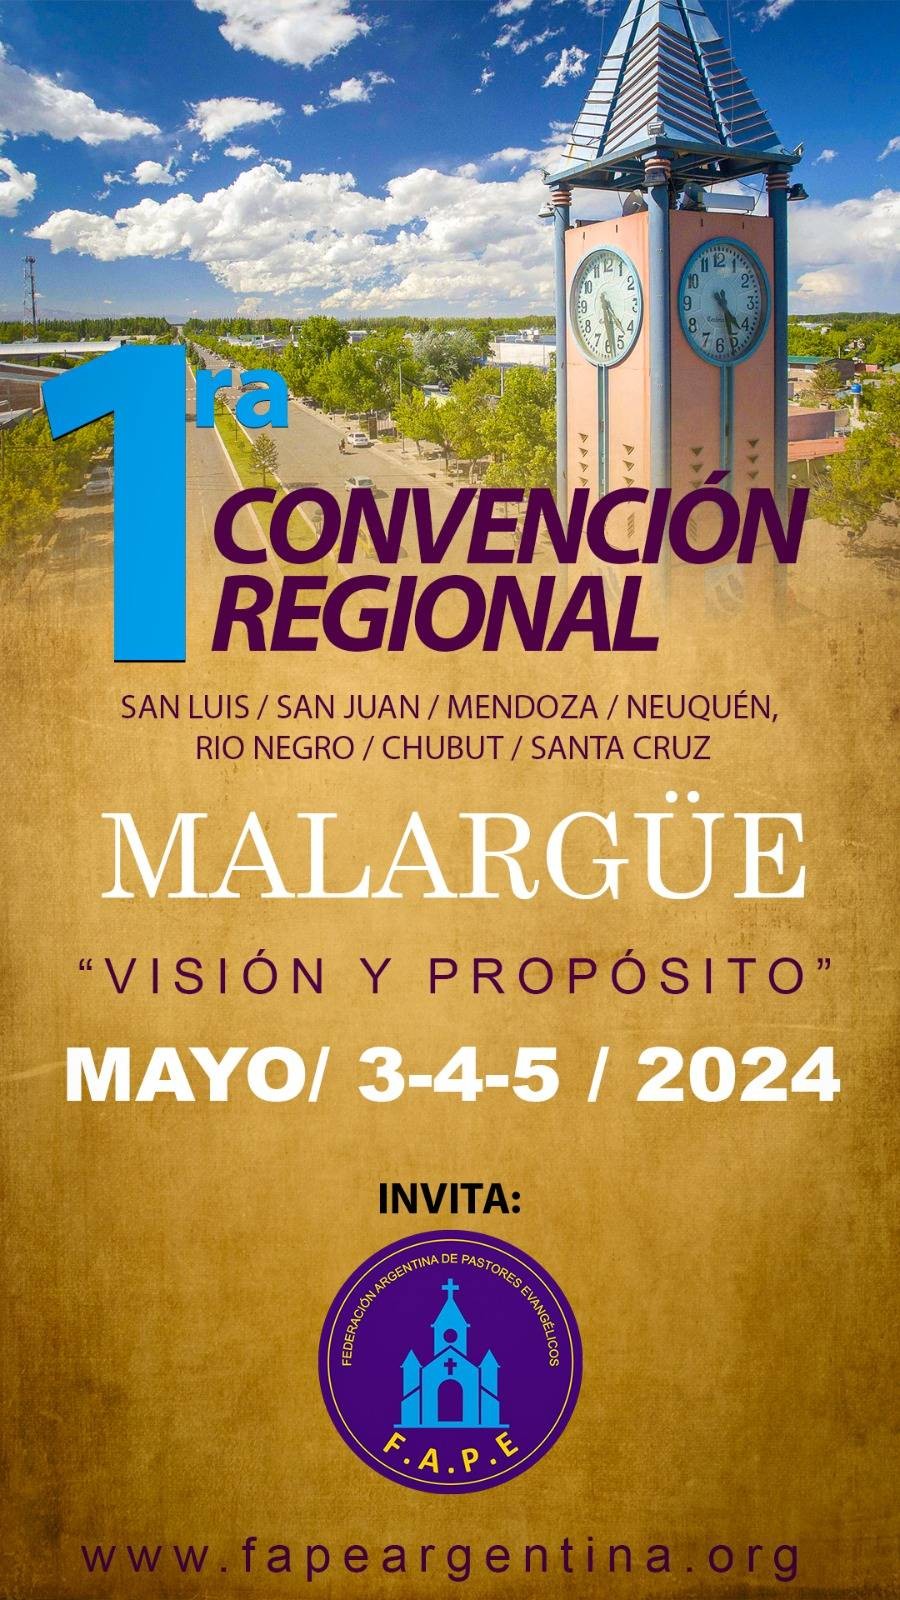 La Convención Regional de la Federación Argentina de Pastores Evangélicos llega a la provincia de Mendoza gracias a proyecto presentado por comisión organizadora del sur